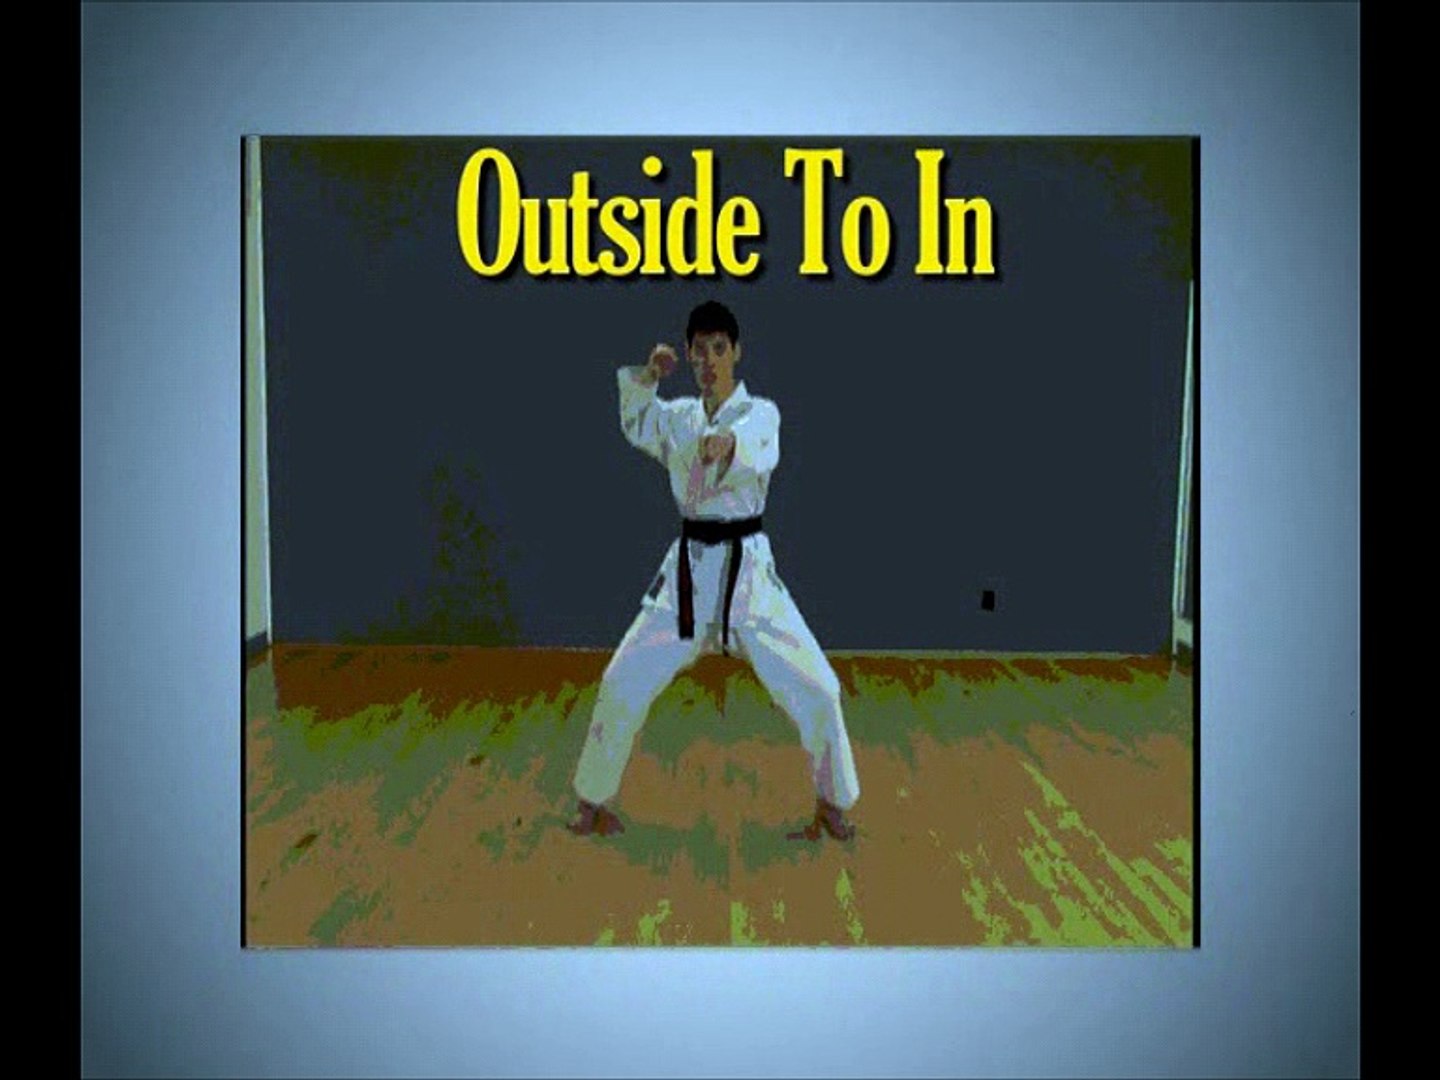 osamu inoue taekwondo basic training